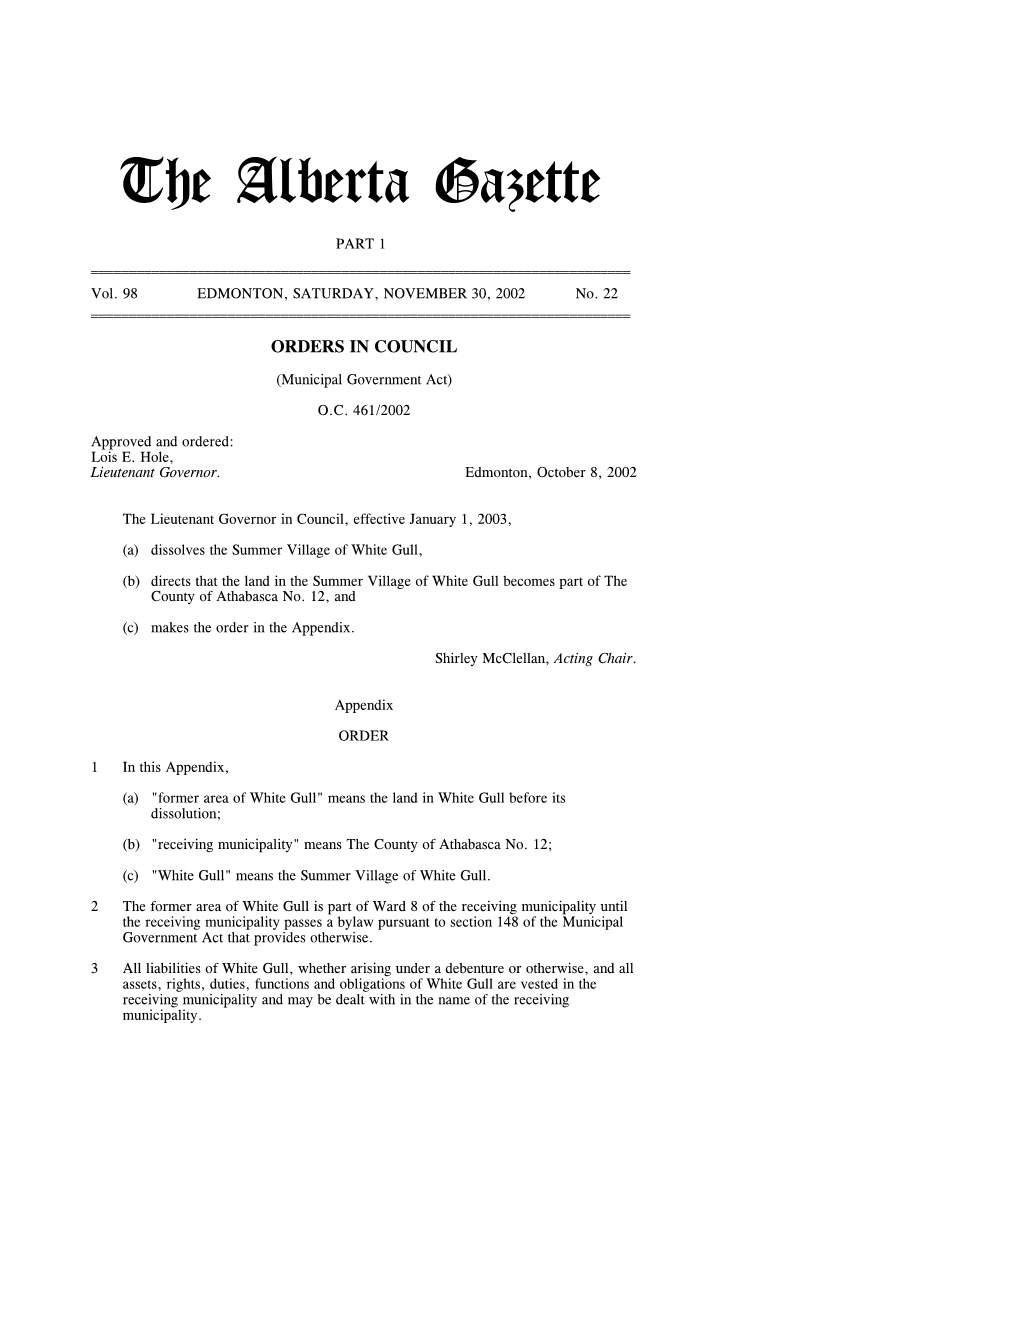 The Alberta Gazette, Part I, November 30, 2002